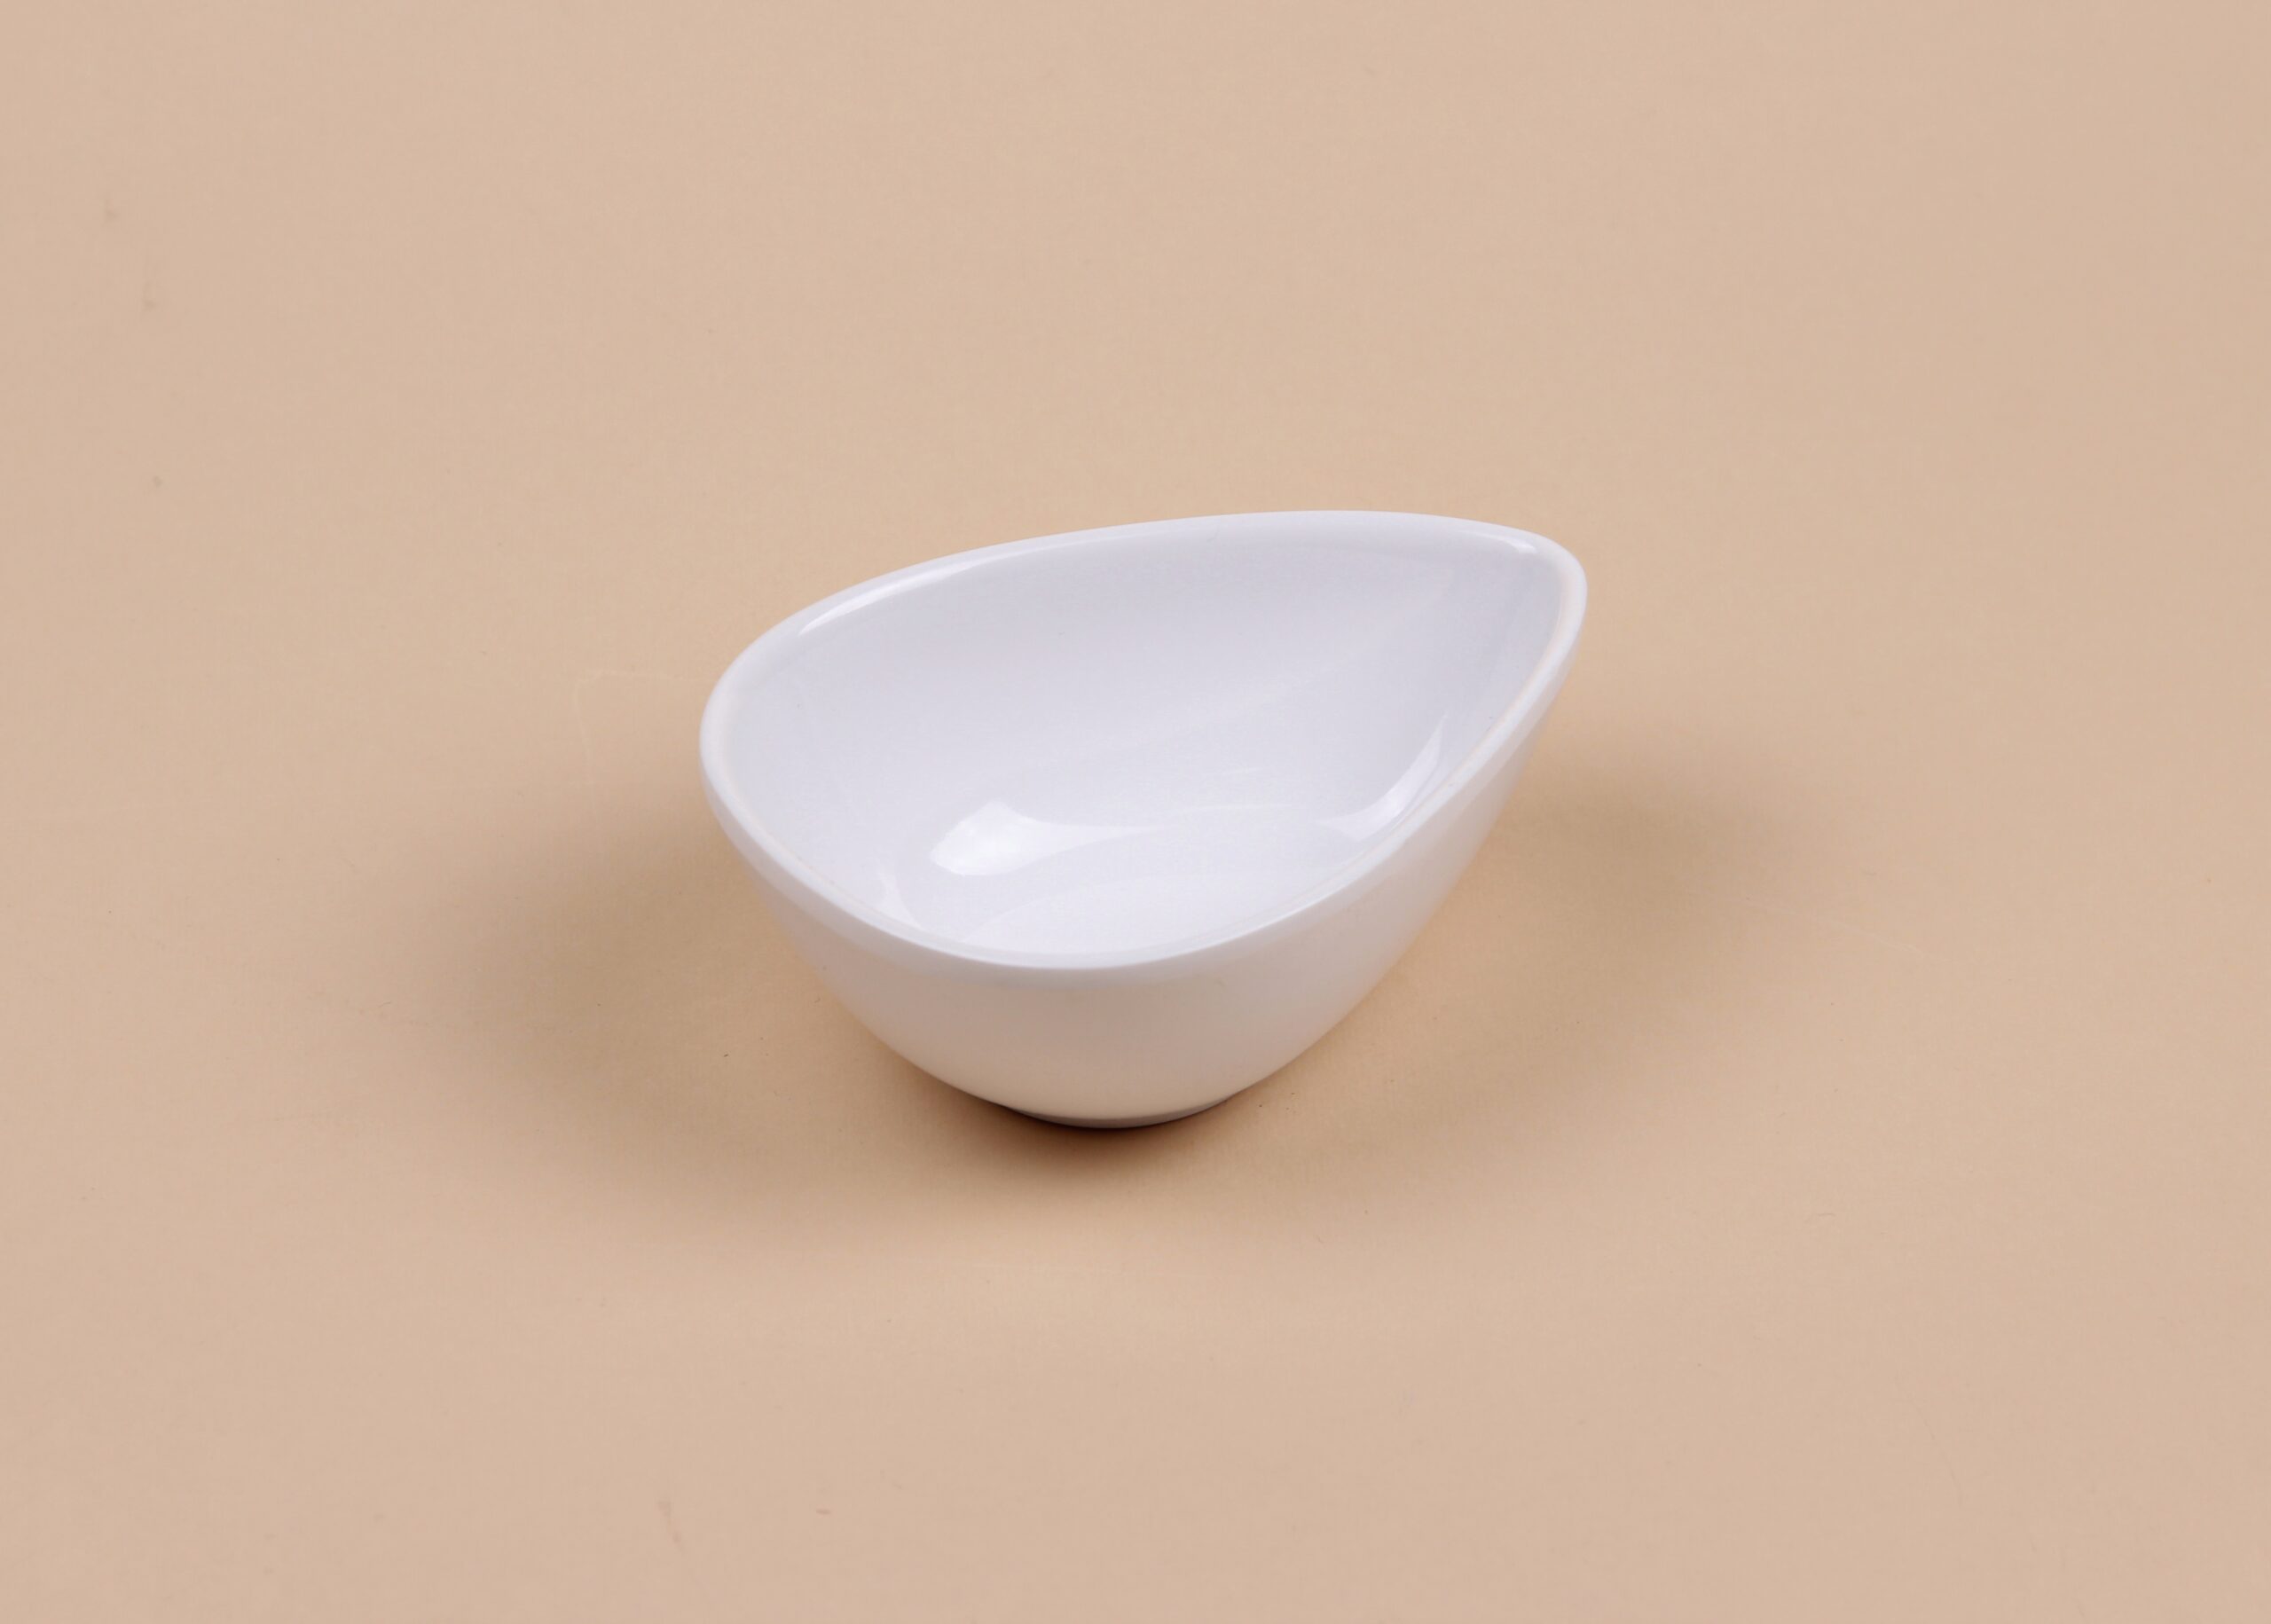 Чаша для соуса треугольная округлая белая, 10,4х7,7х4 см, арт. 607047